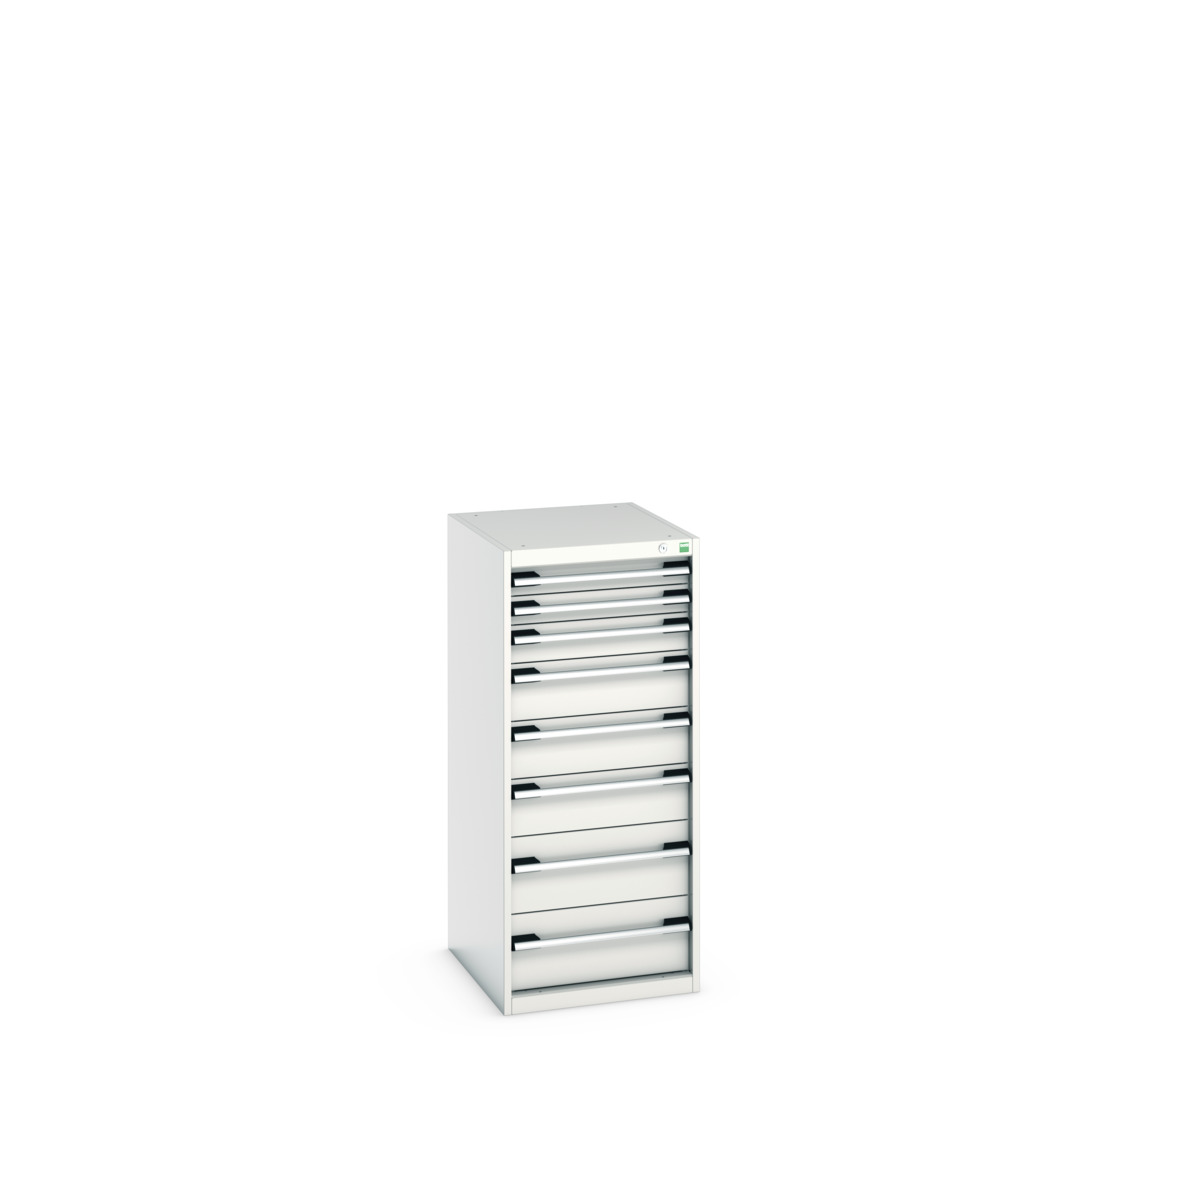 40018069.16V - cubio drawer cabinet